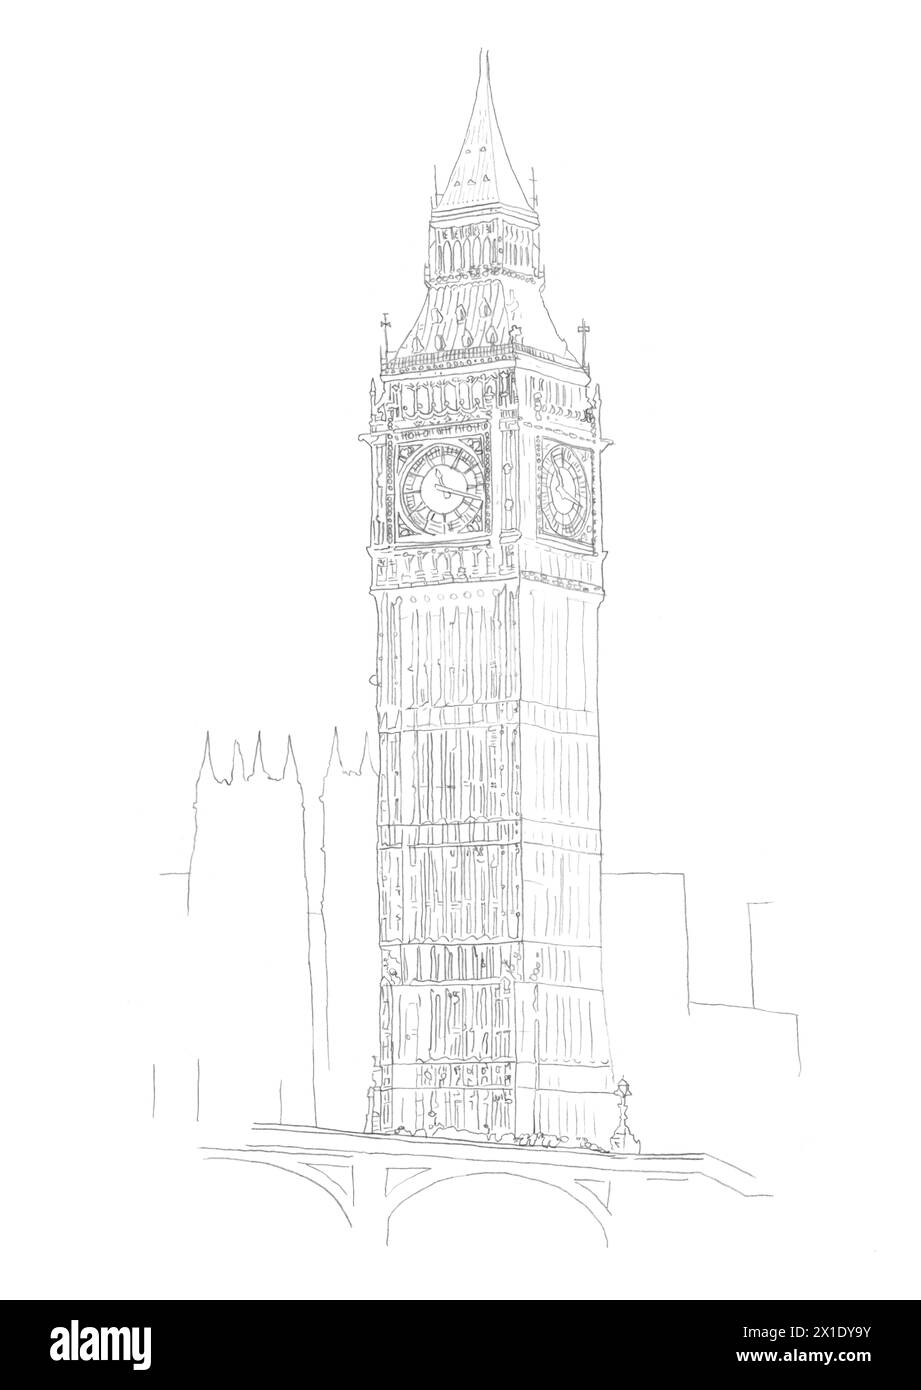 Architekturstiftzeichnung von Big Ben / St Stephen's / Elizabeth Tower Gebäude in Westminster, London, Großbritannien Stockfoto